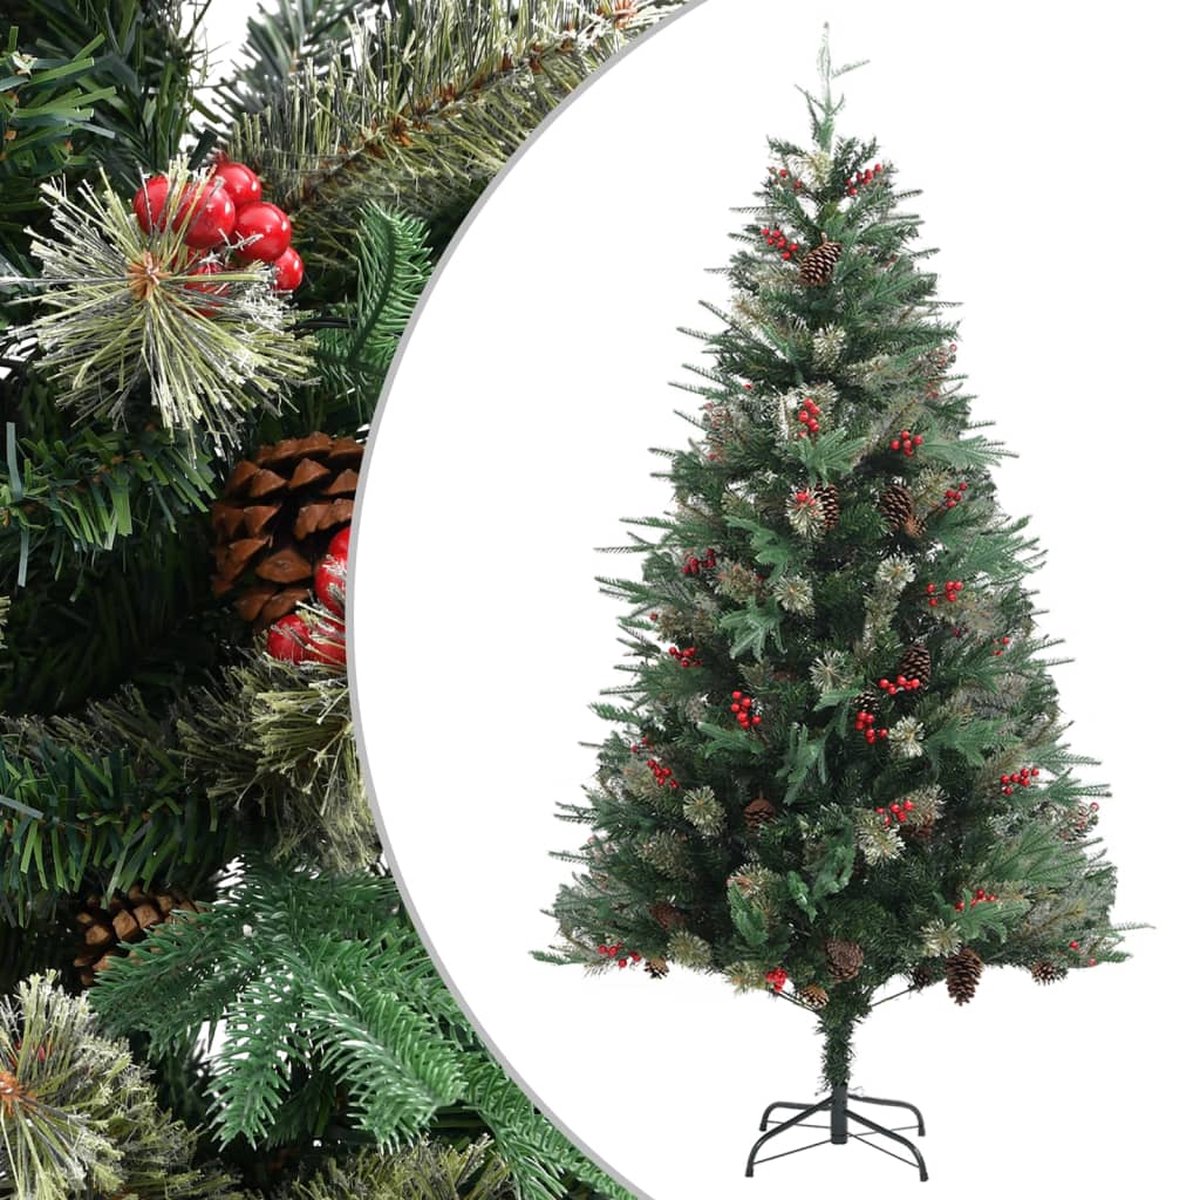 VidaLife Kerstboom met dennenappels 195 cm PVC en PE groen